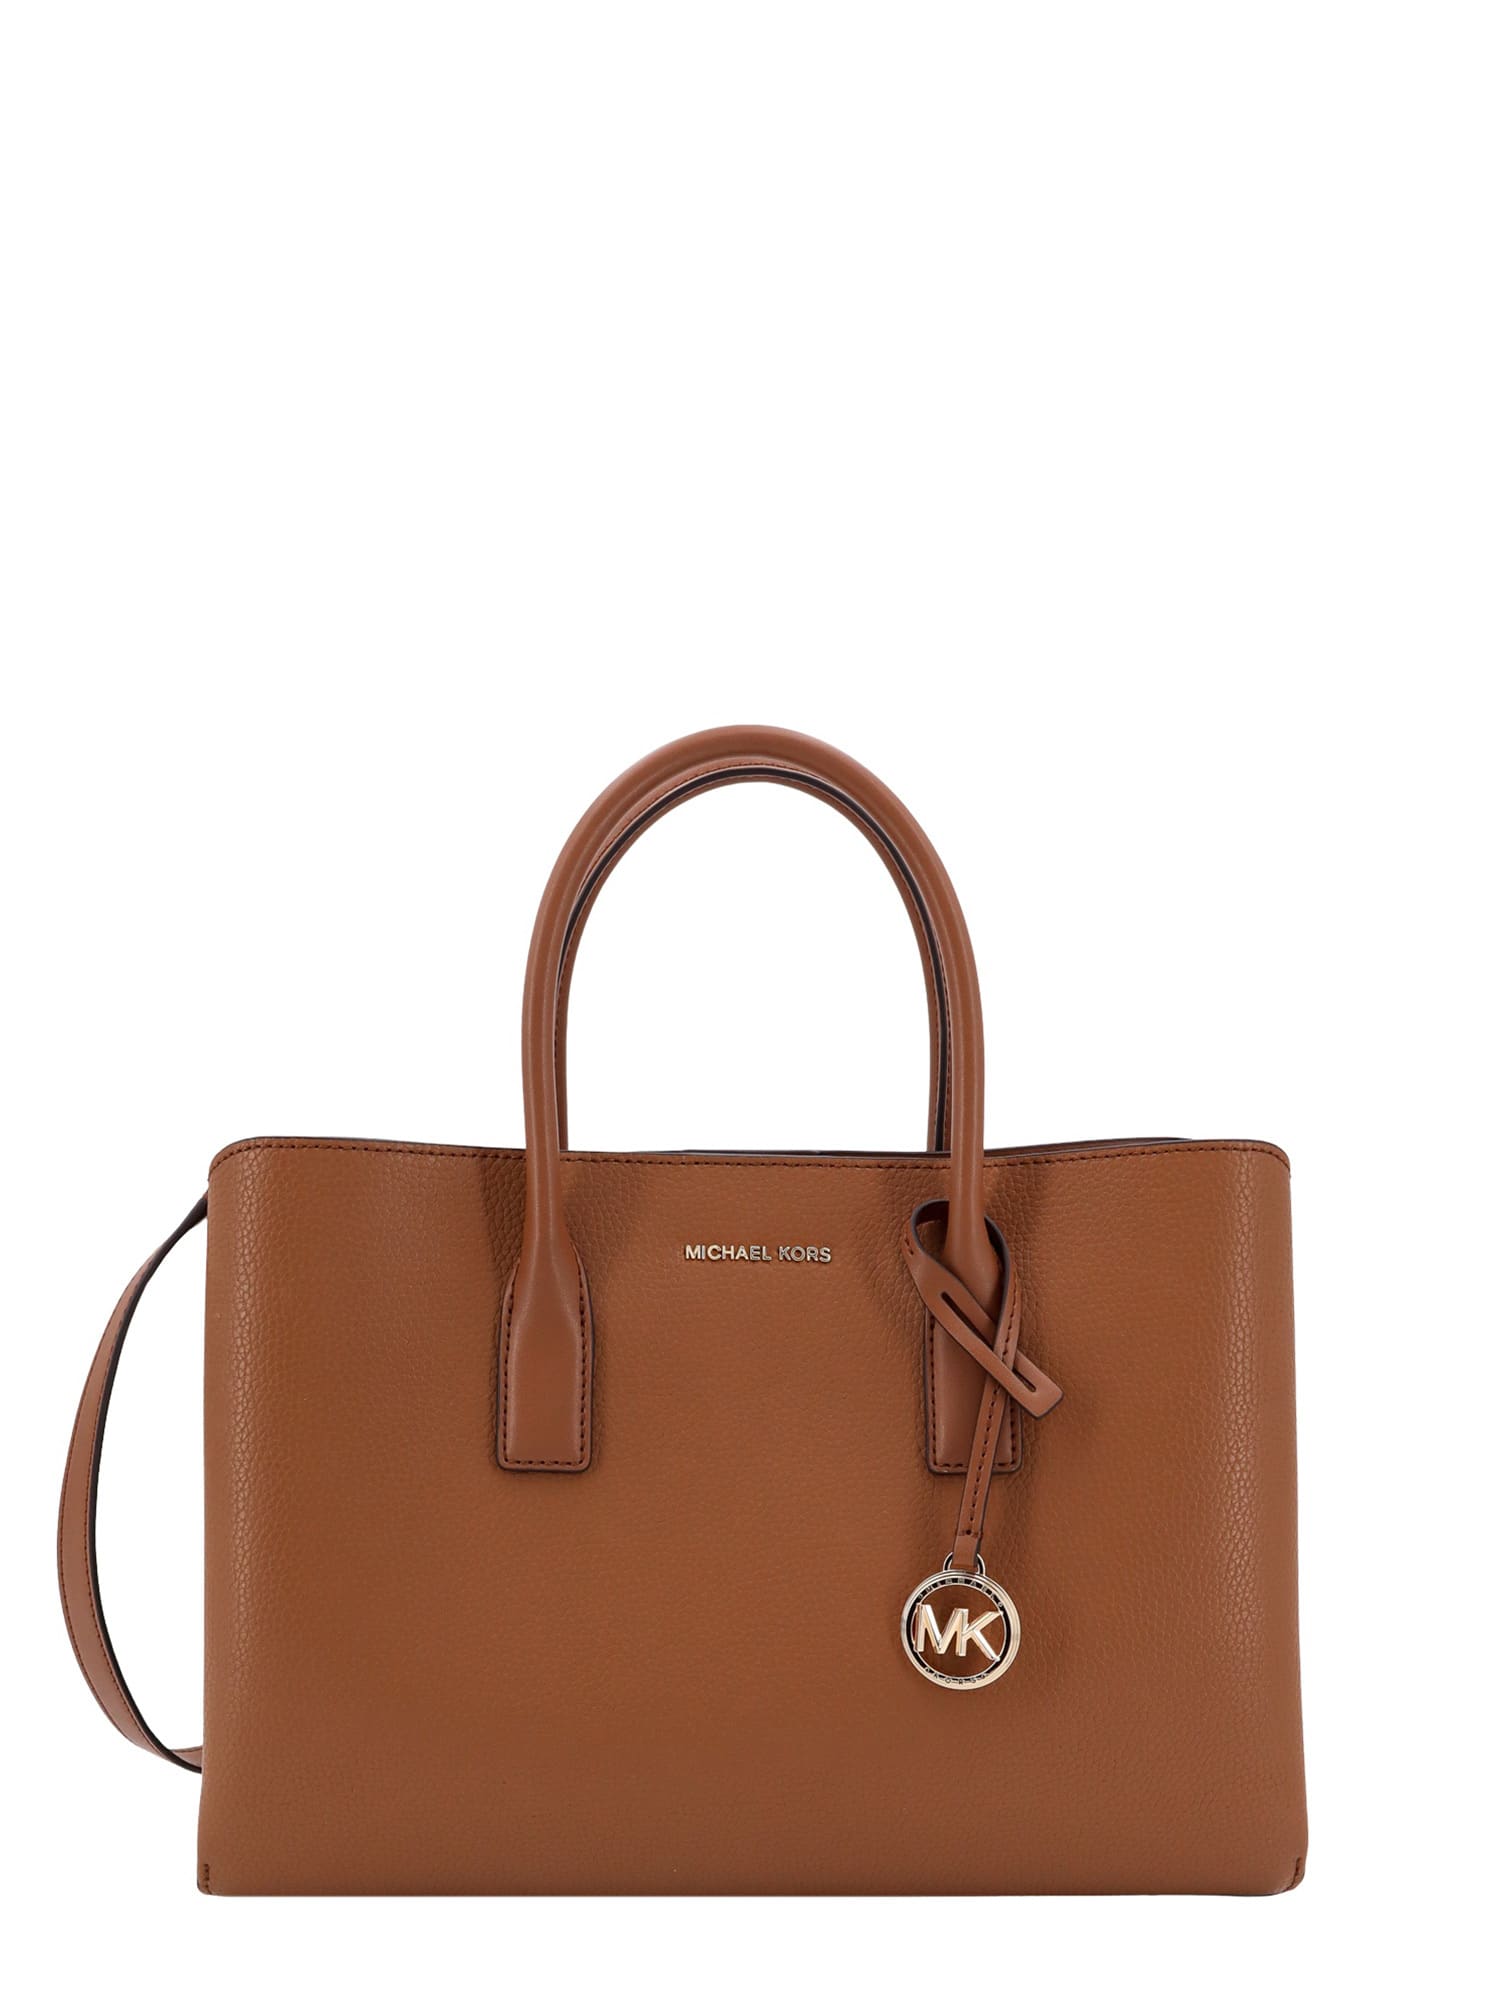 Michael Kors Collection Handbag